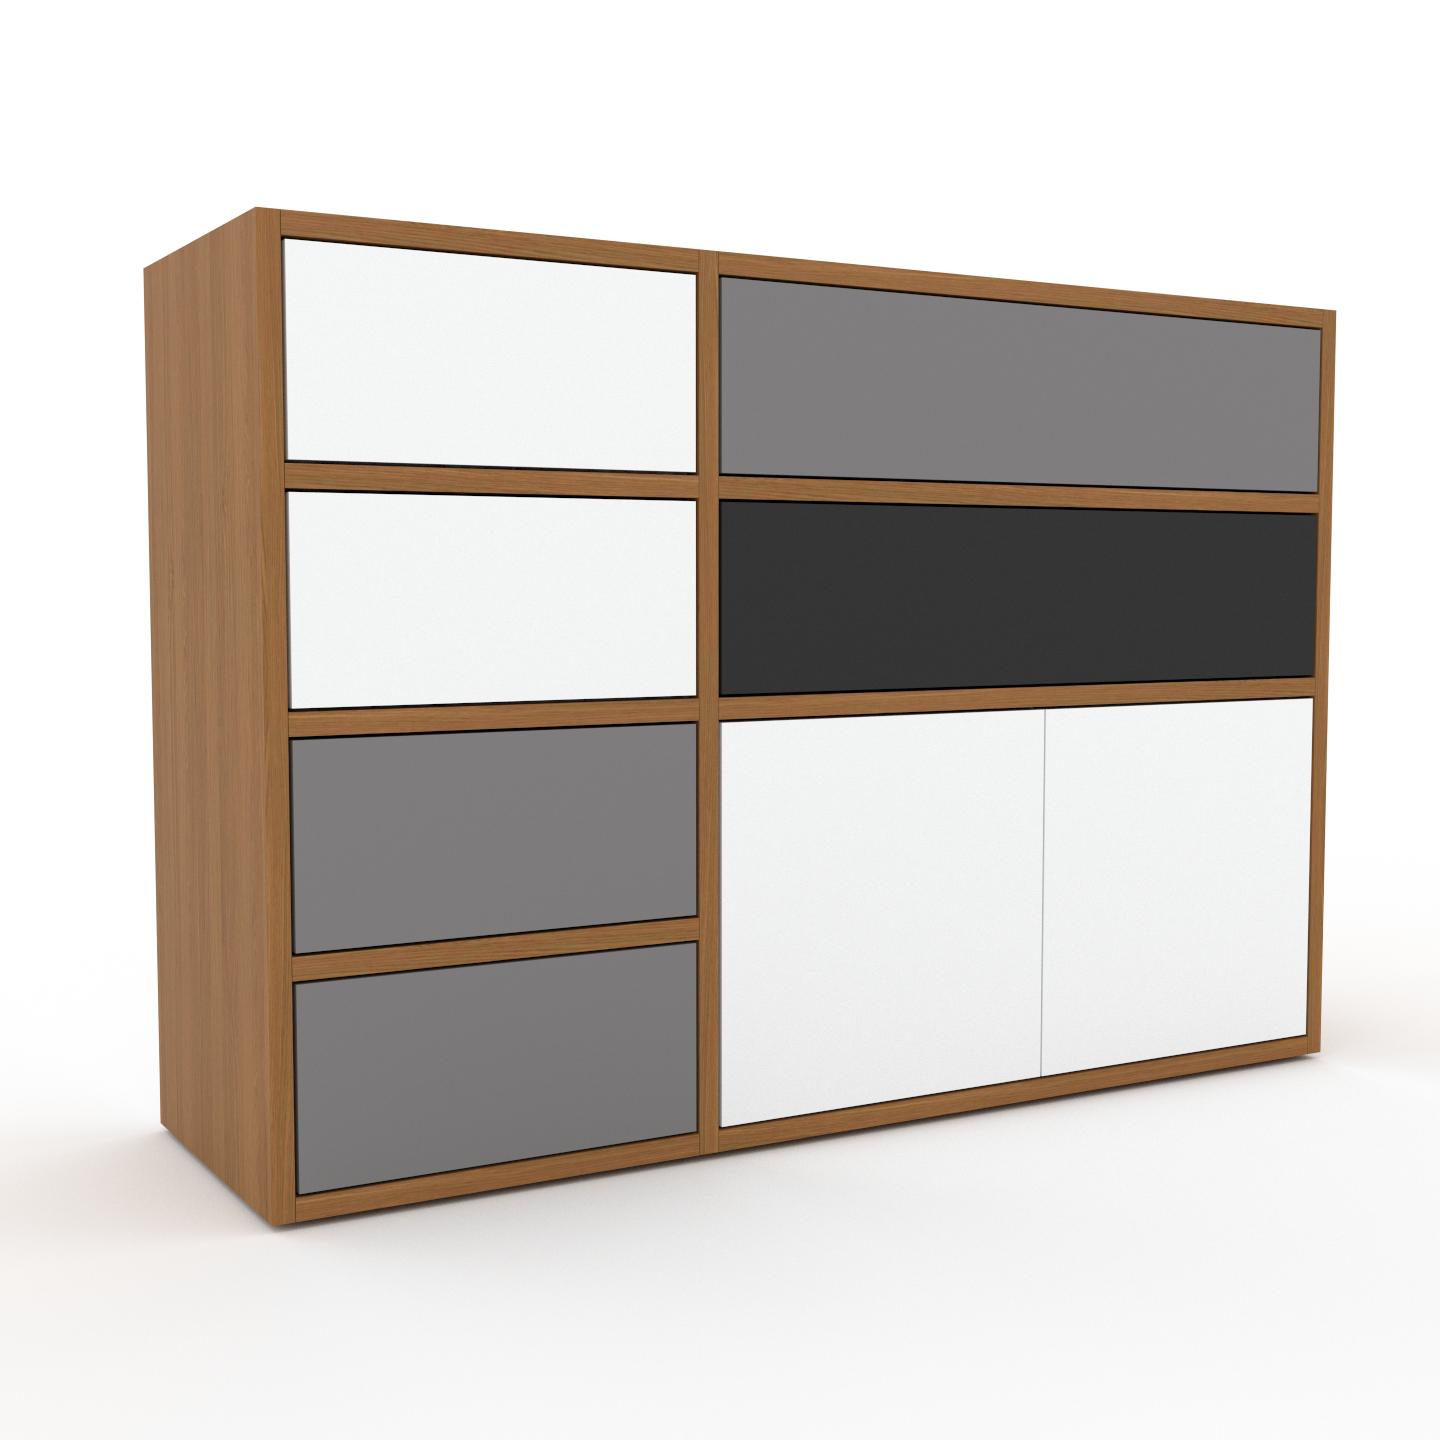 MYCS Wohnwand Weiß - Individuelle Designer-Regalwand: Schubladen in Grau & Türen in Weiß - Hochwertige Materialien - 116 x 80 x 35 cm, Konfigurator